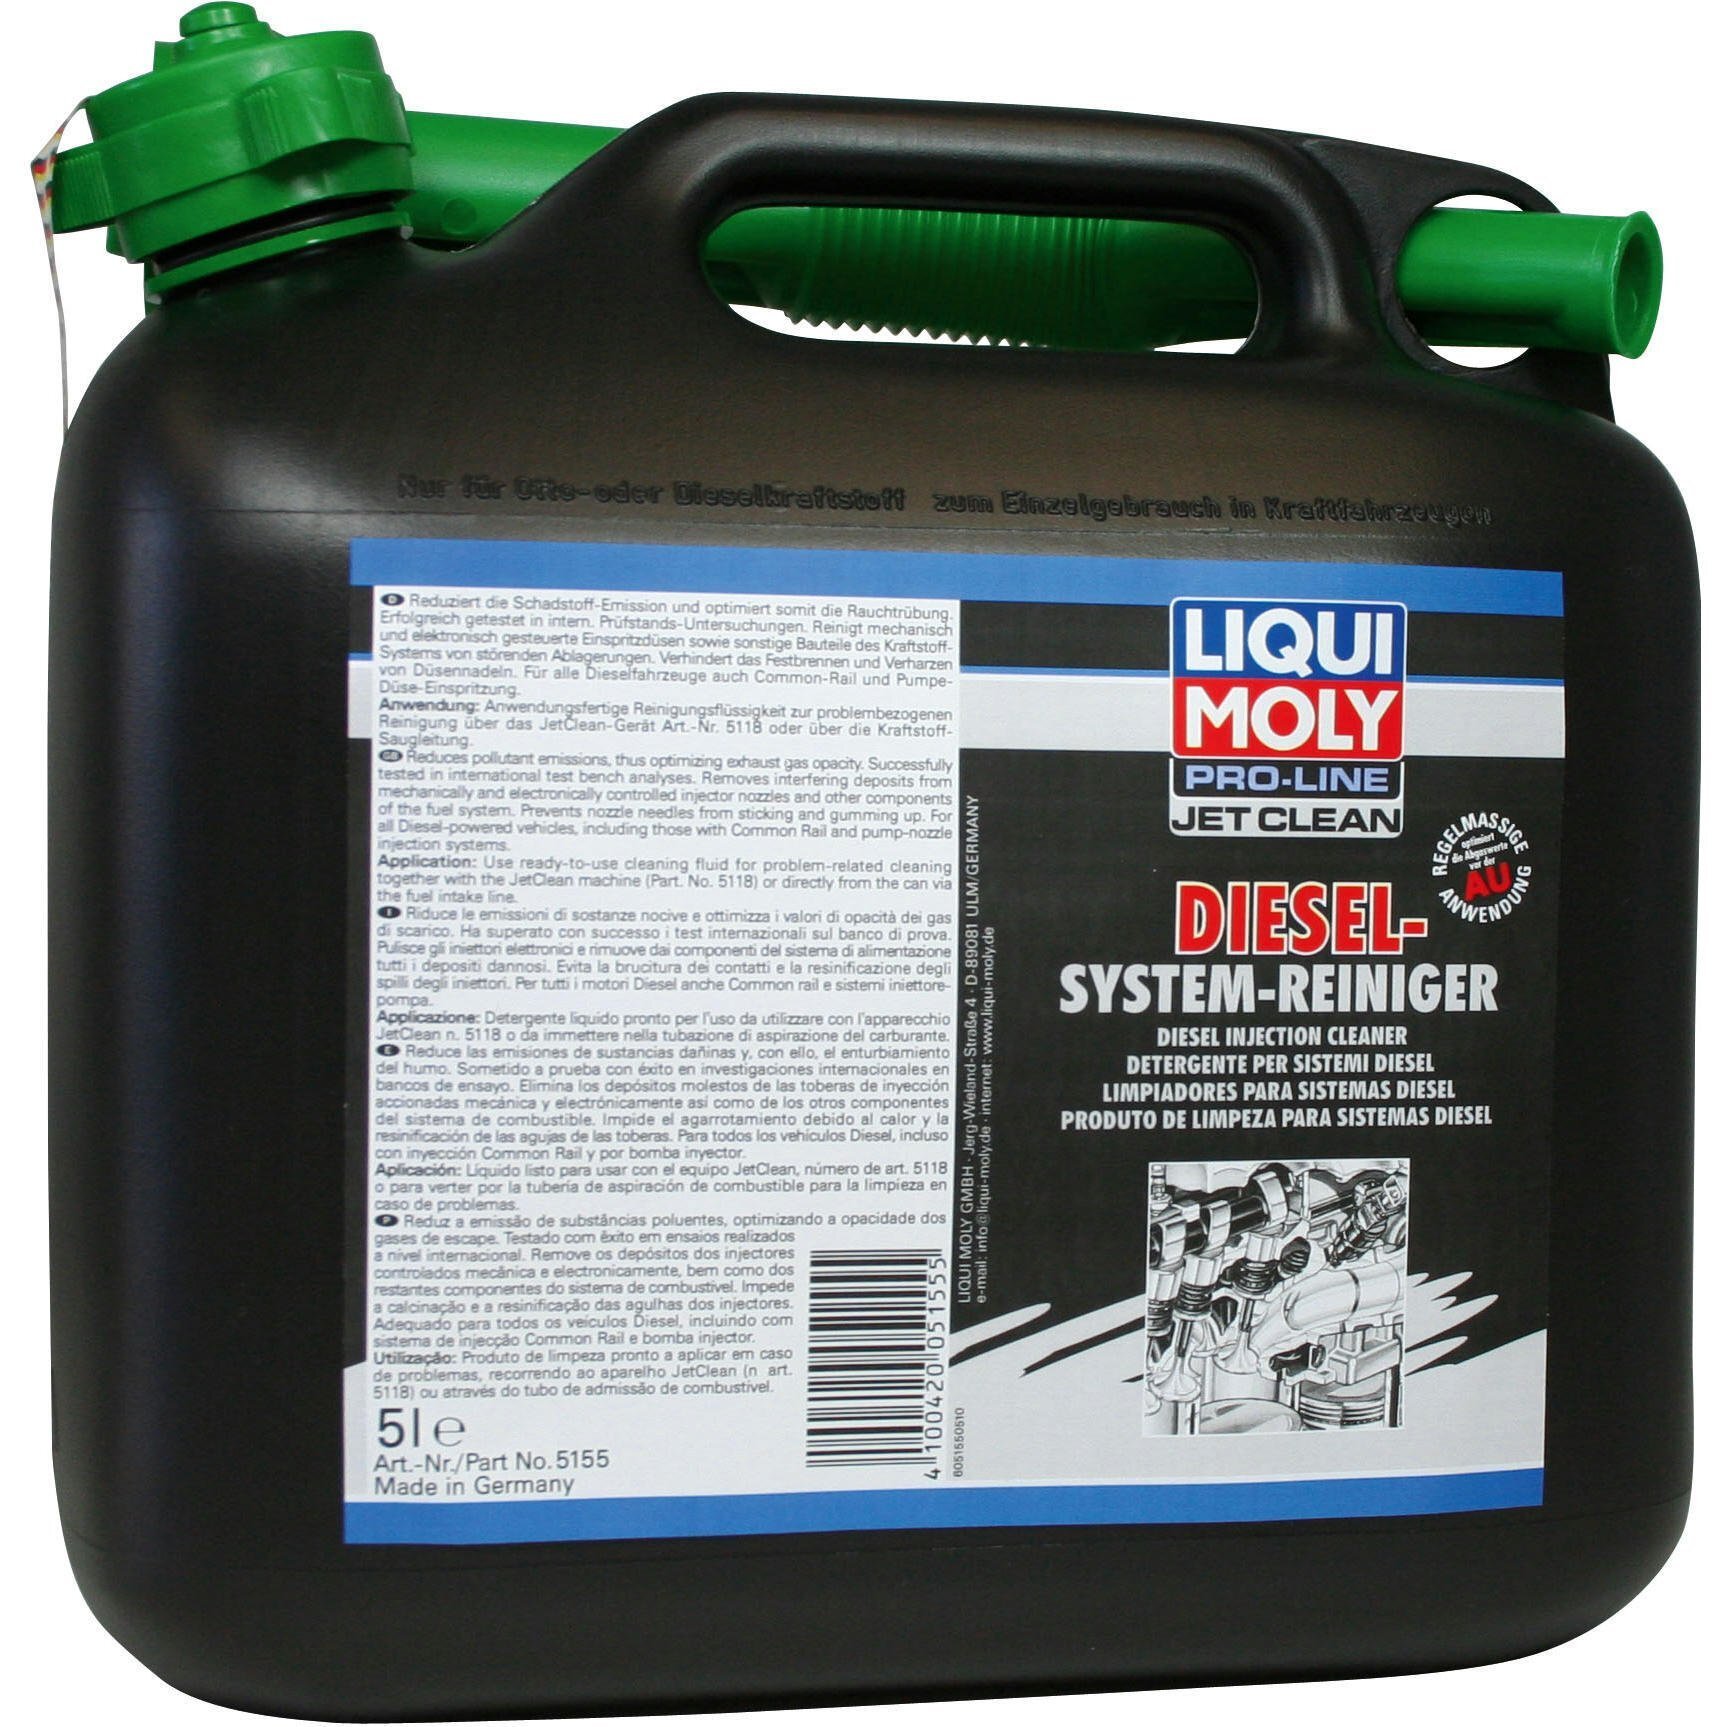 Очиститель Liqui Moly для дизельных топливных систем Pro-Line Jetclean Diesel-System-Reiniger 5л (4100420051555) фото 1